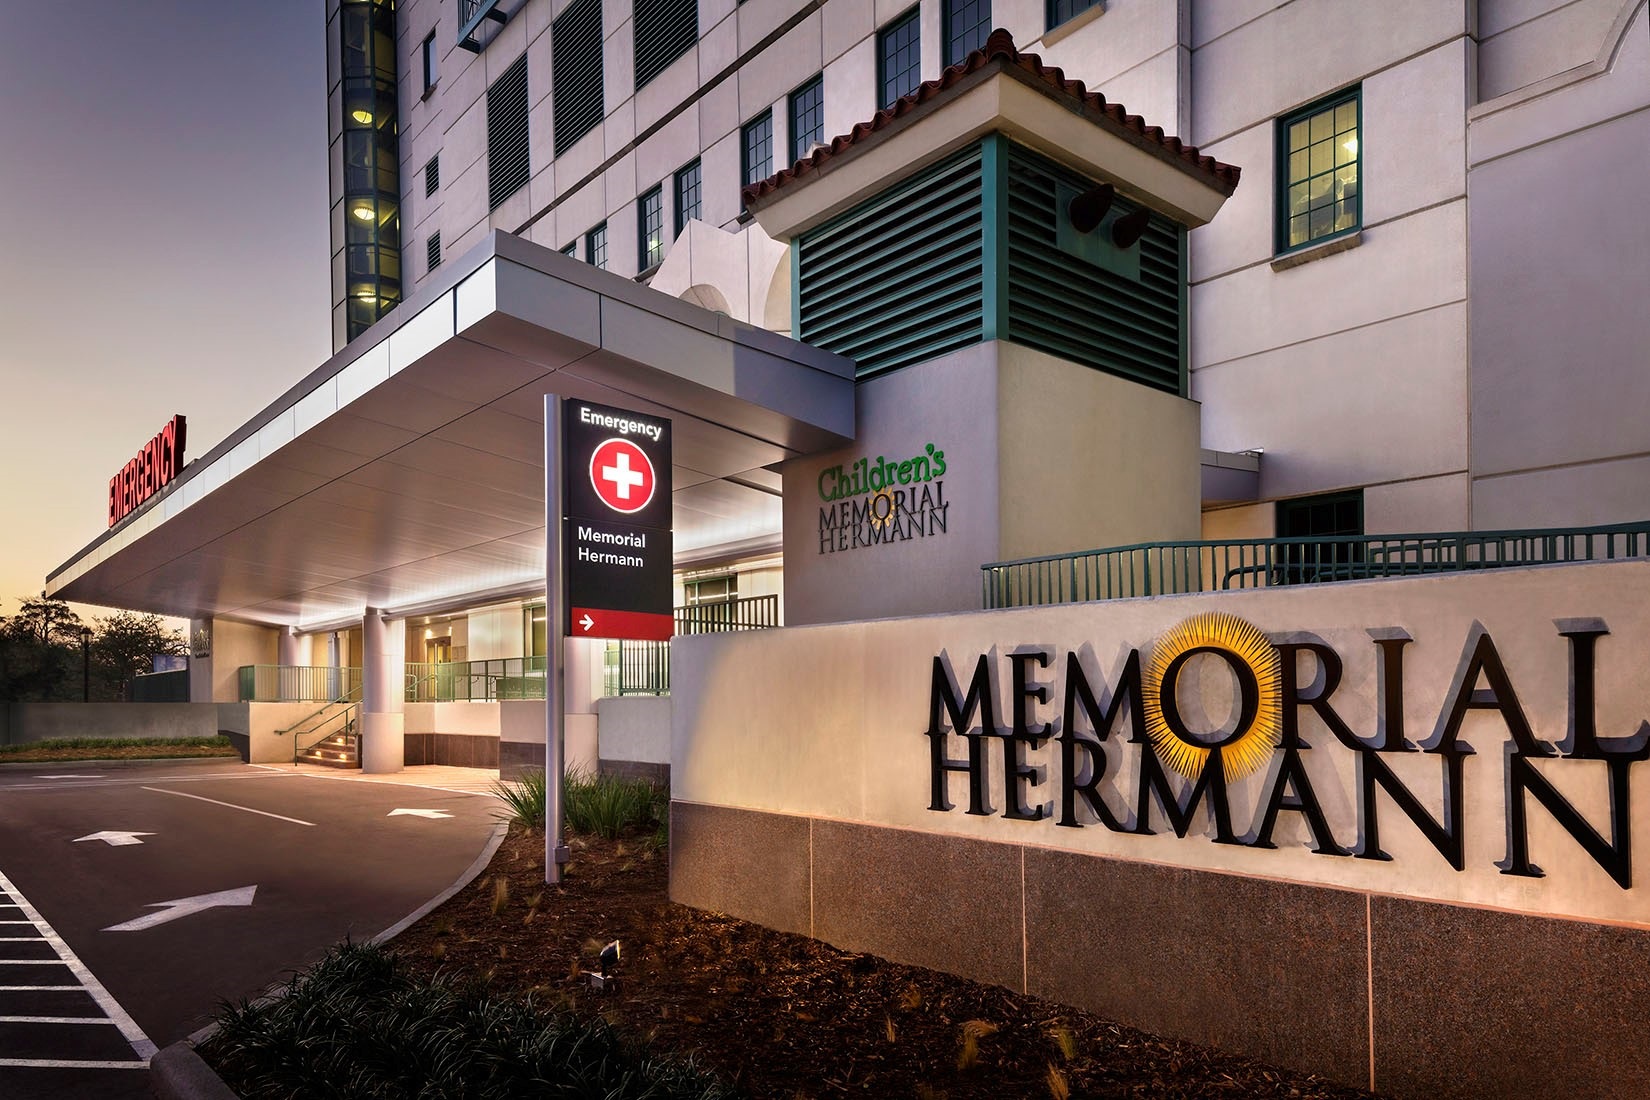 Slide 4 – Memorial Hermann Hospital Exterior